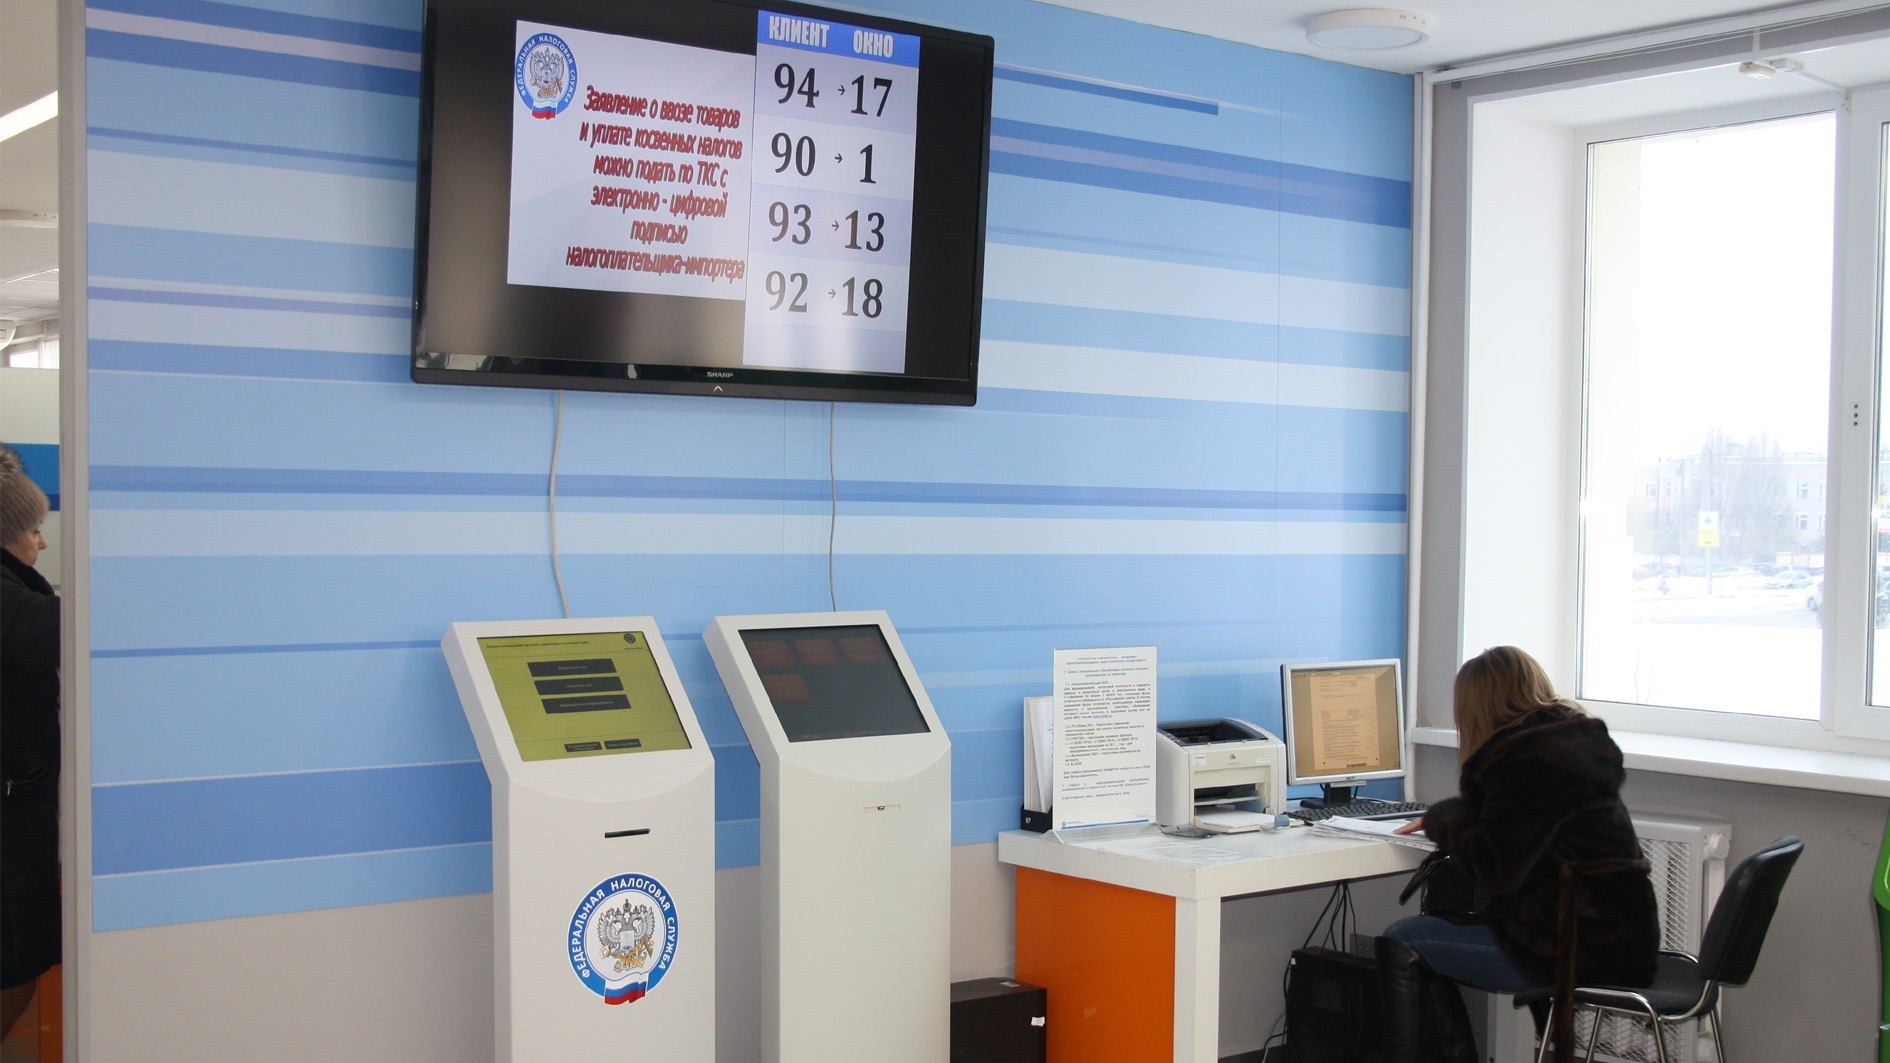 На гостевом компьютере в операционном зале Вы можете воспользоваться онлайн-сервисами сайта ФНС России, заполнить декларацию по форме 3-НДФЛ, распечатать документы